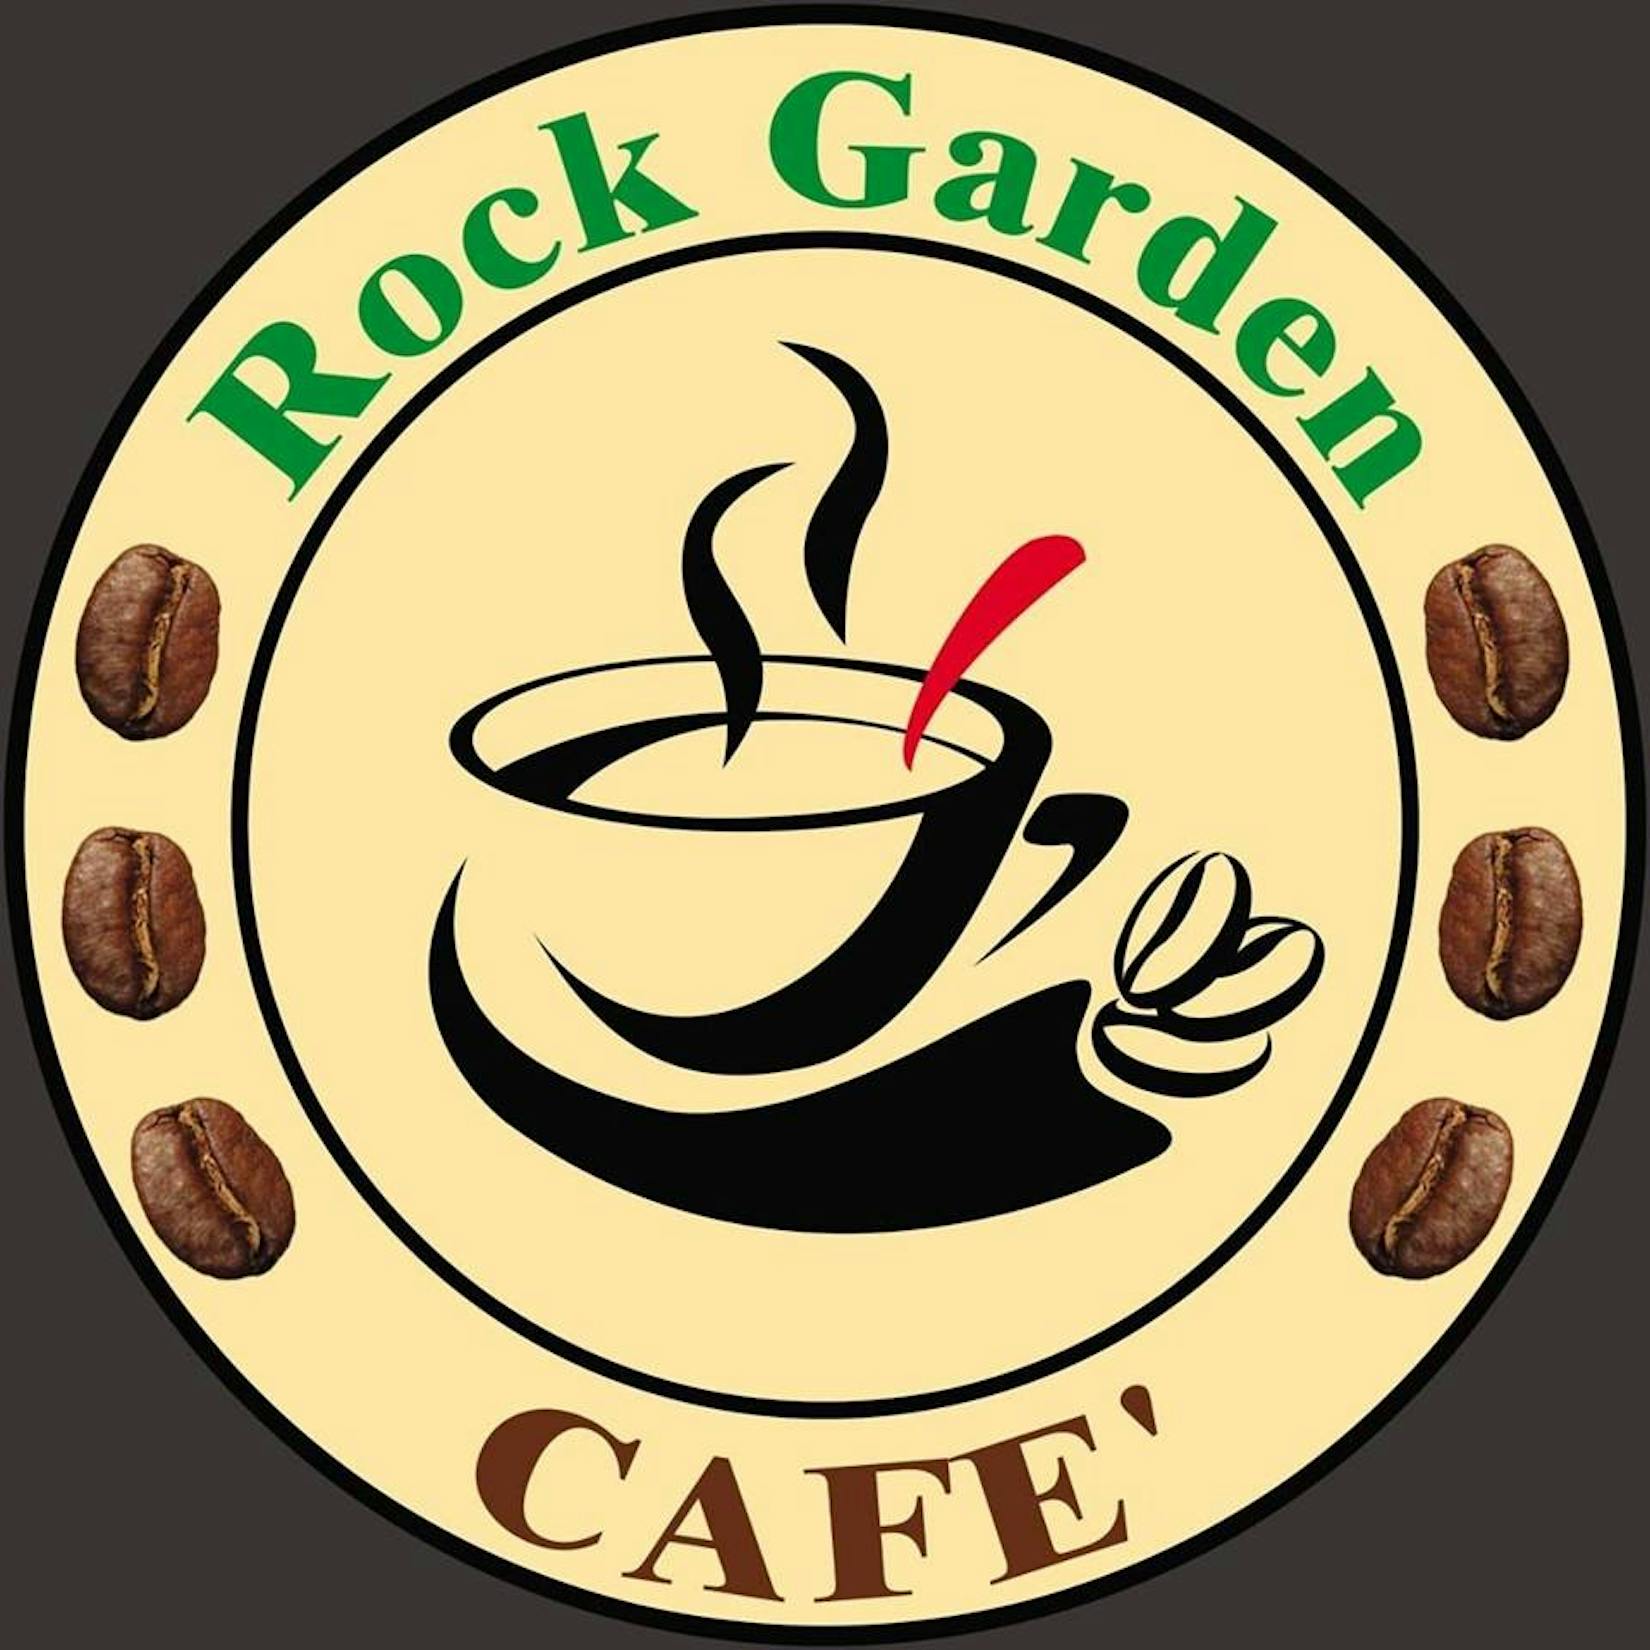 Rock Garden Cafe' | yathar